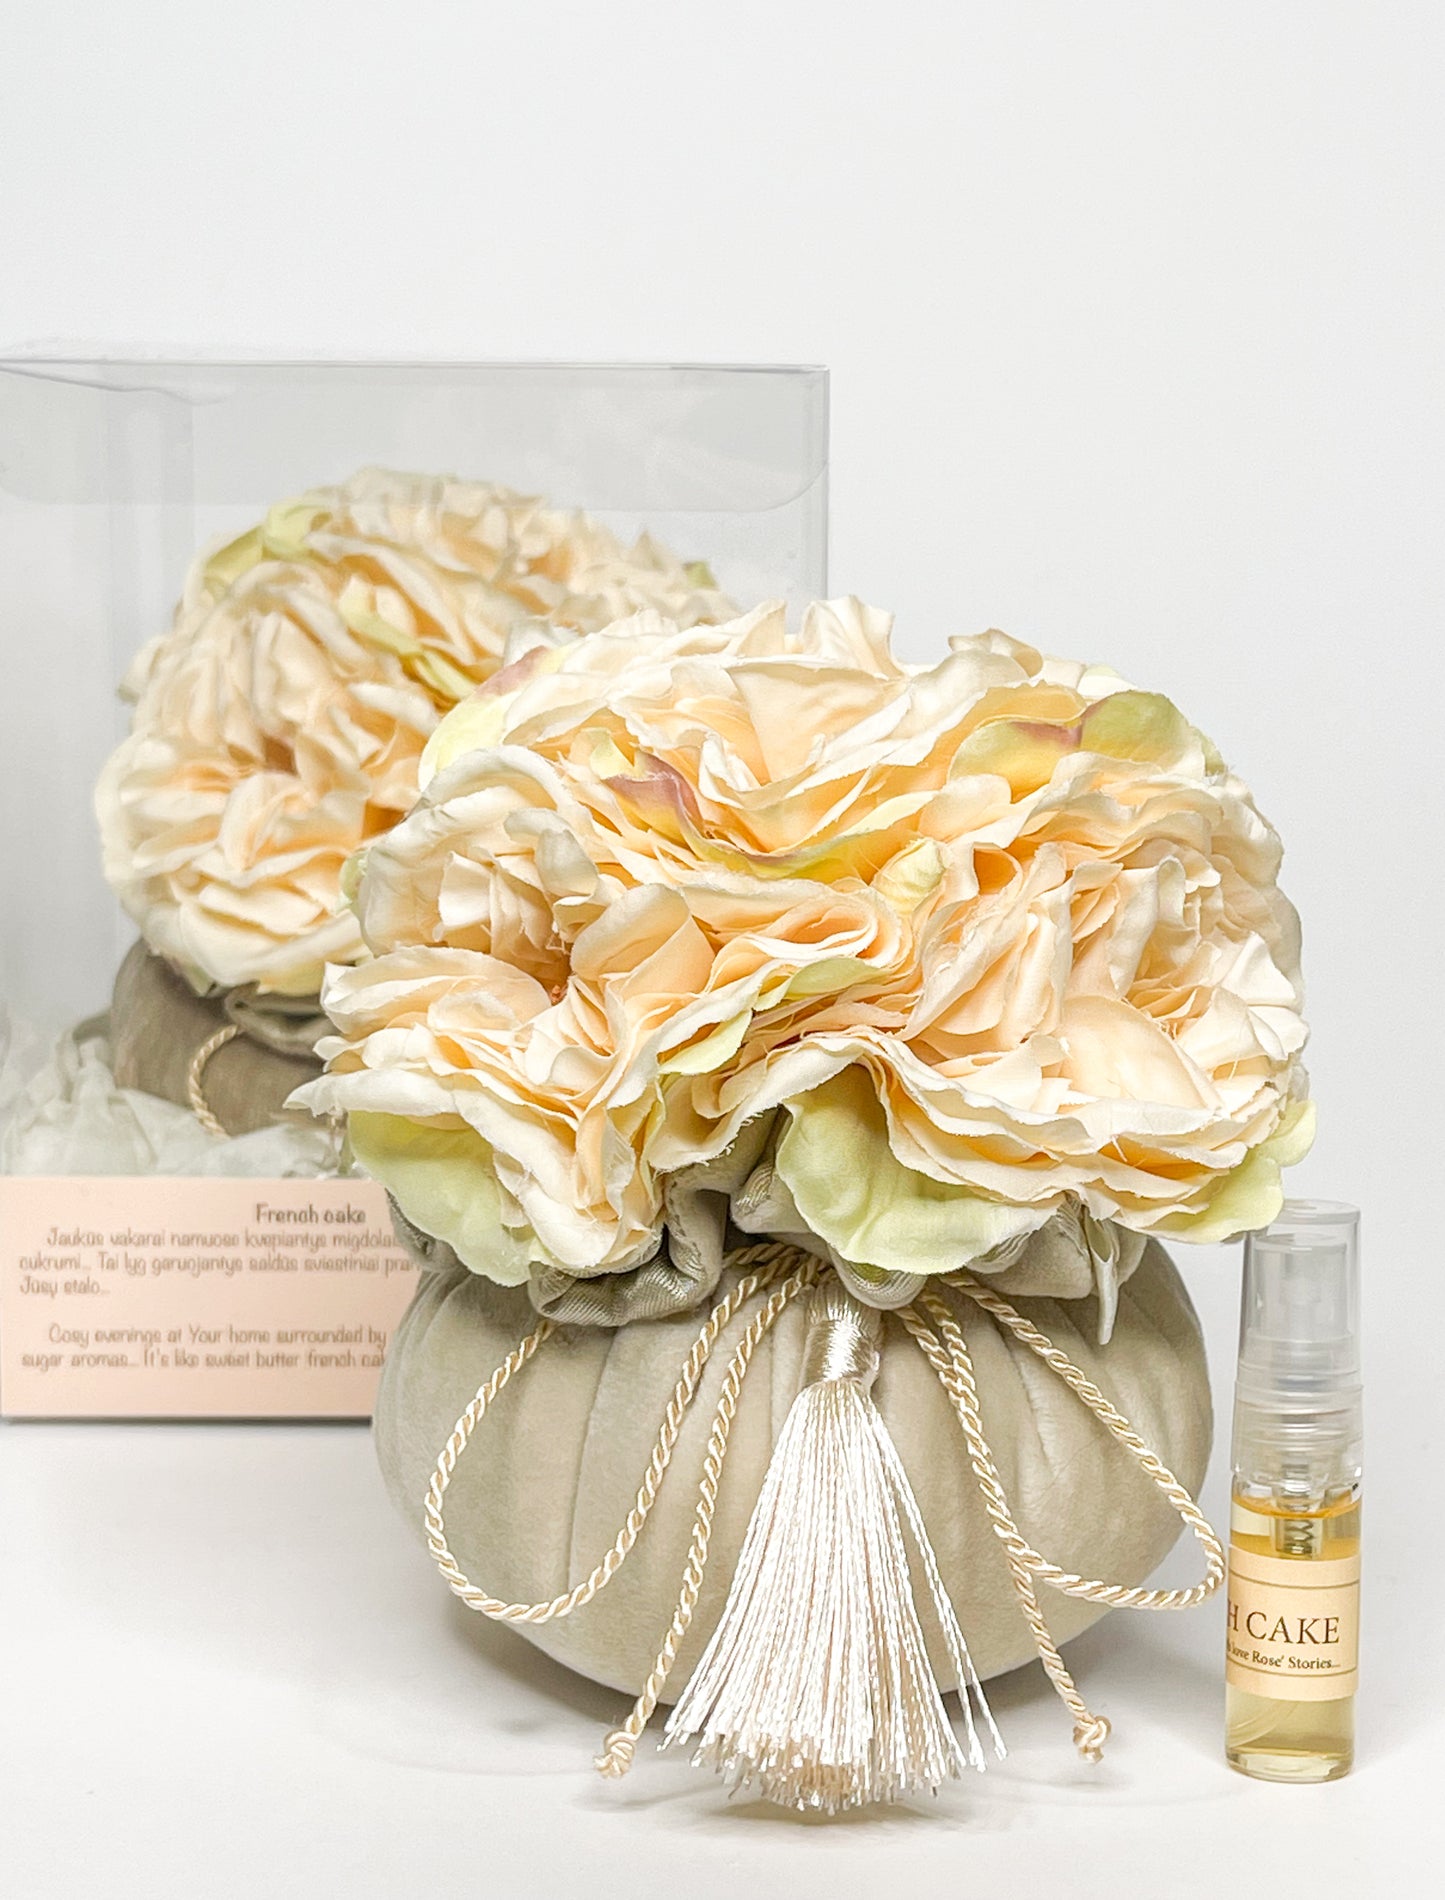 Home fragrance "Milk white roses"